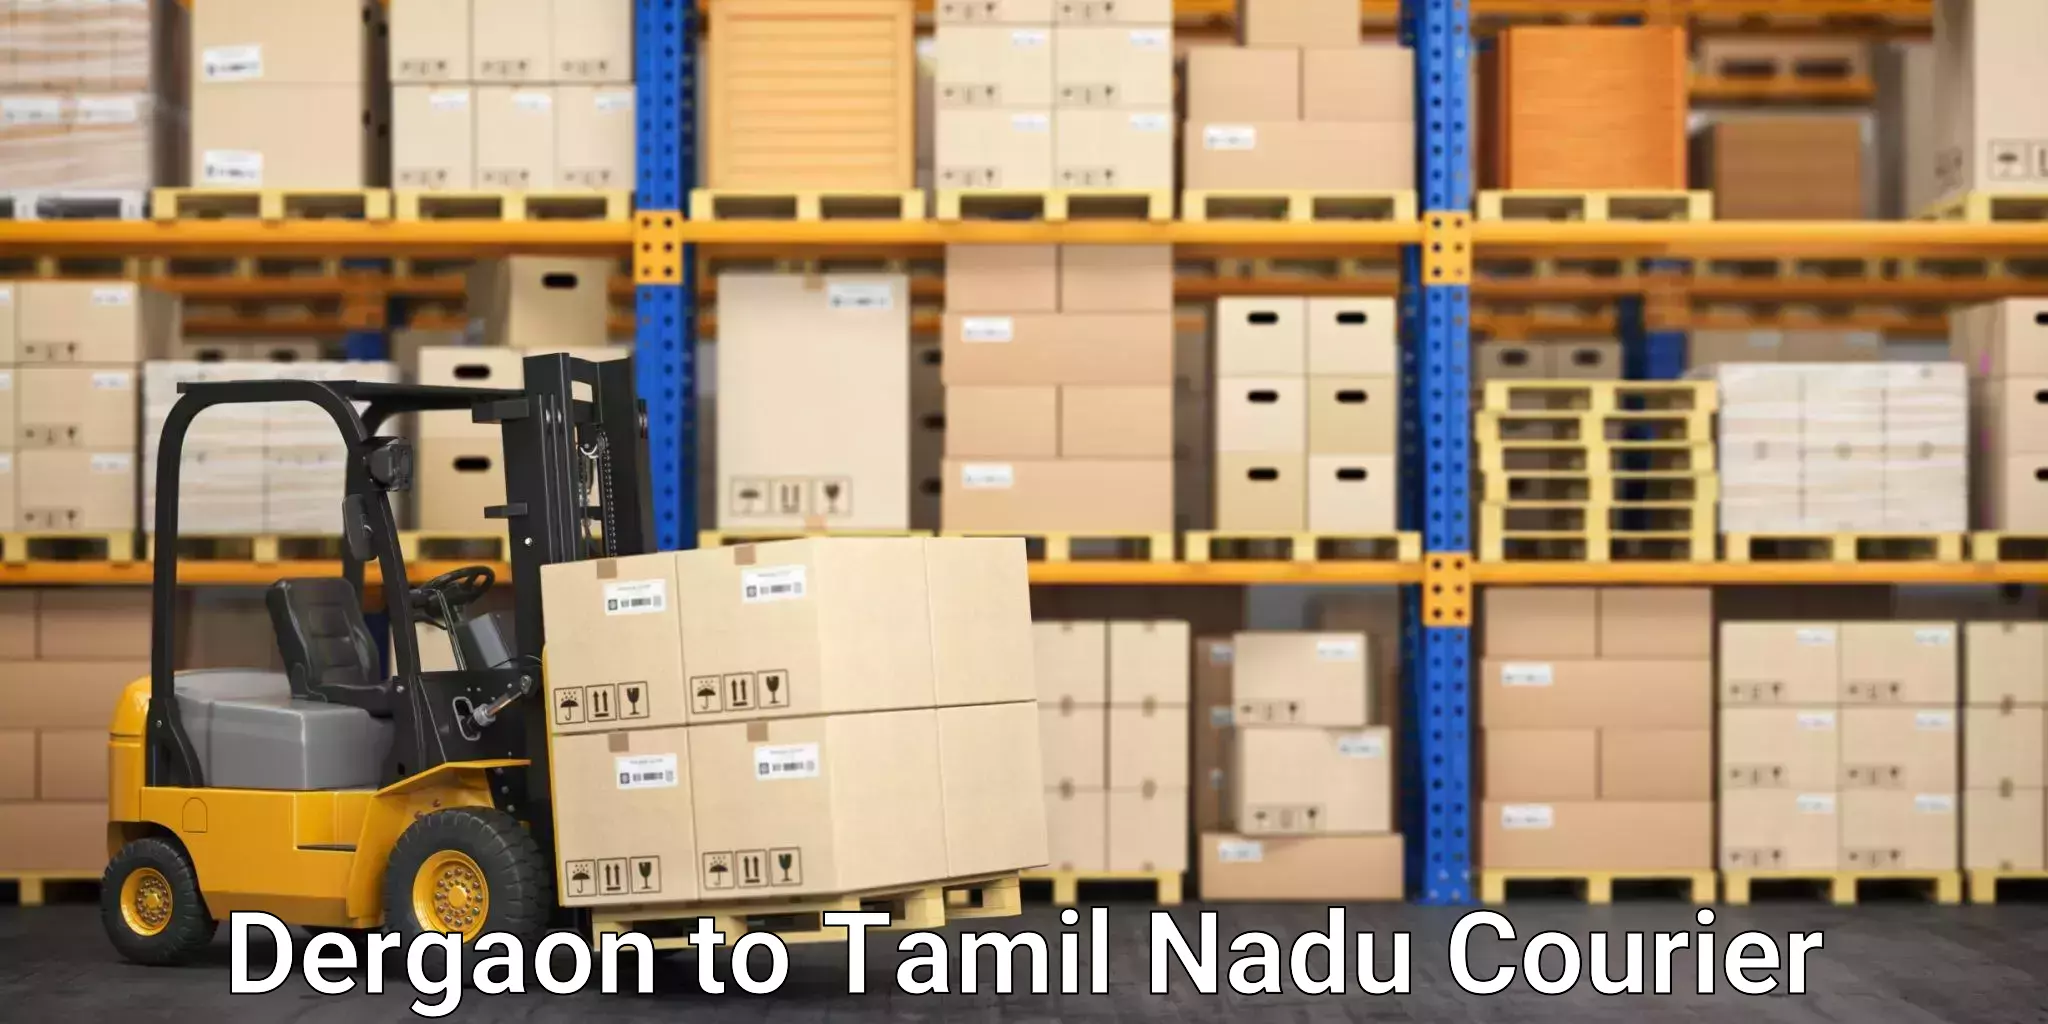 Modern courier technology Dergaon to Tamil Nadu